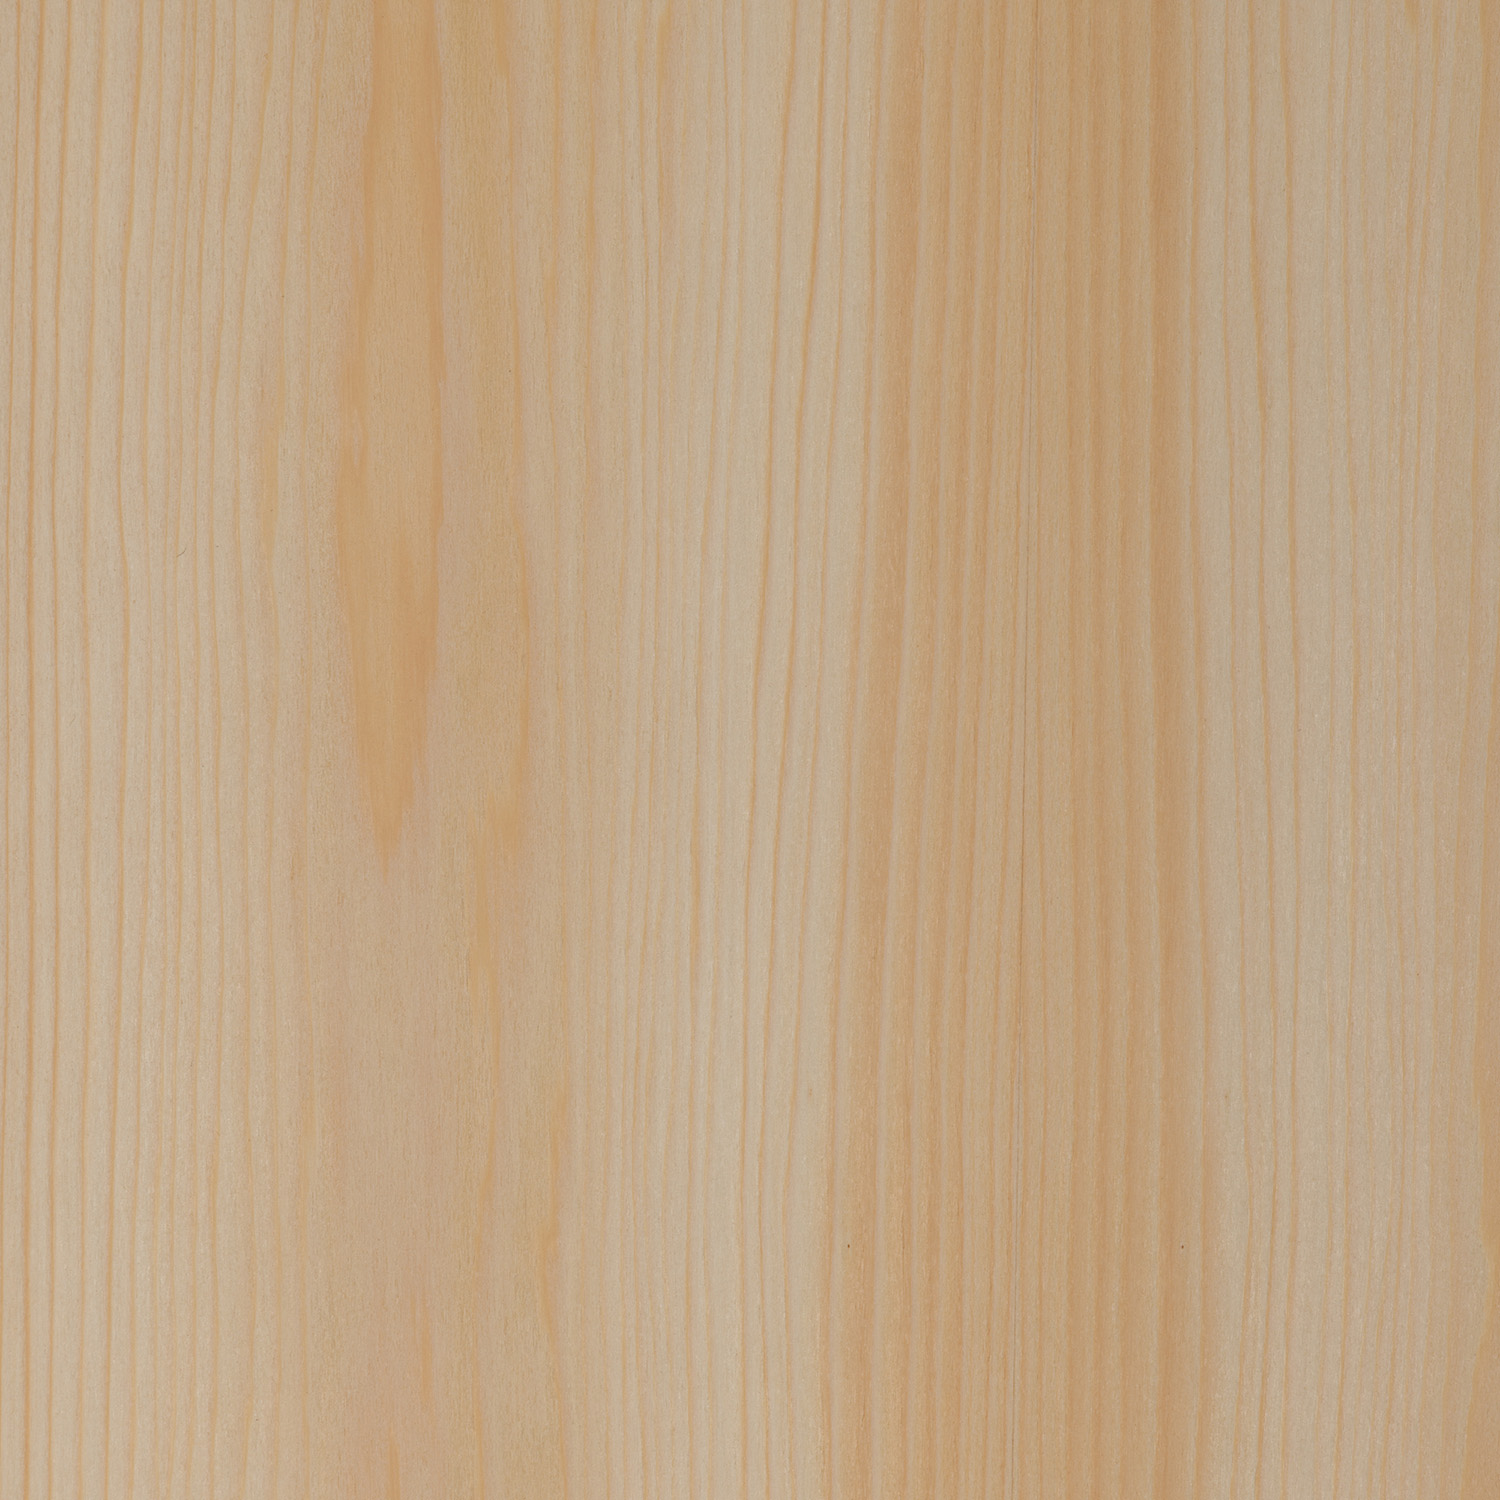 cypress natural wood veneer